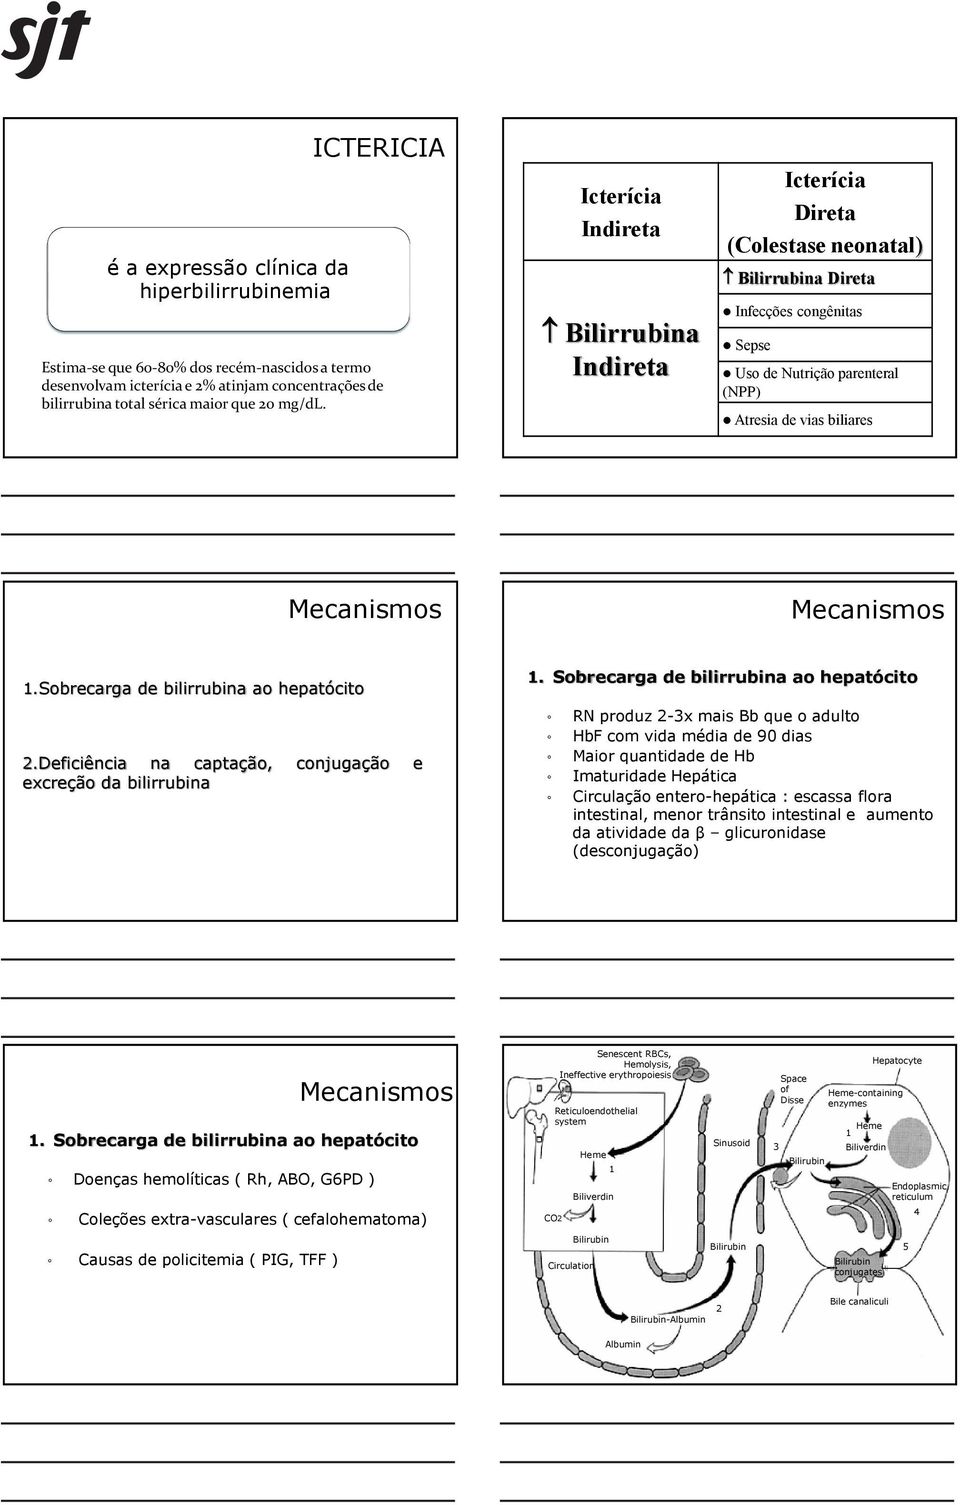 Mecanismos 1.Sobrecarga de bilirrubina ao hepatócito 2.Deficiência na captação, conjugação e excreção da bilirrubina 1.